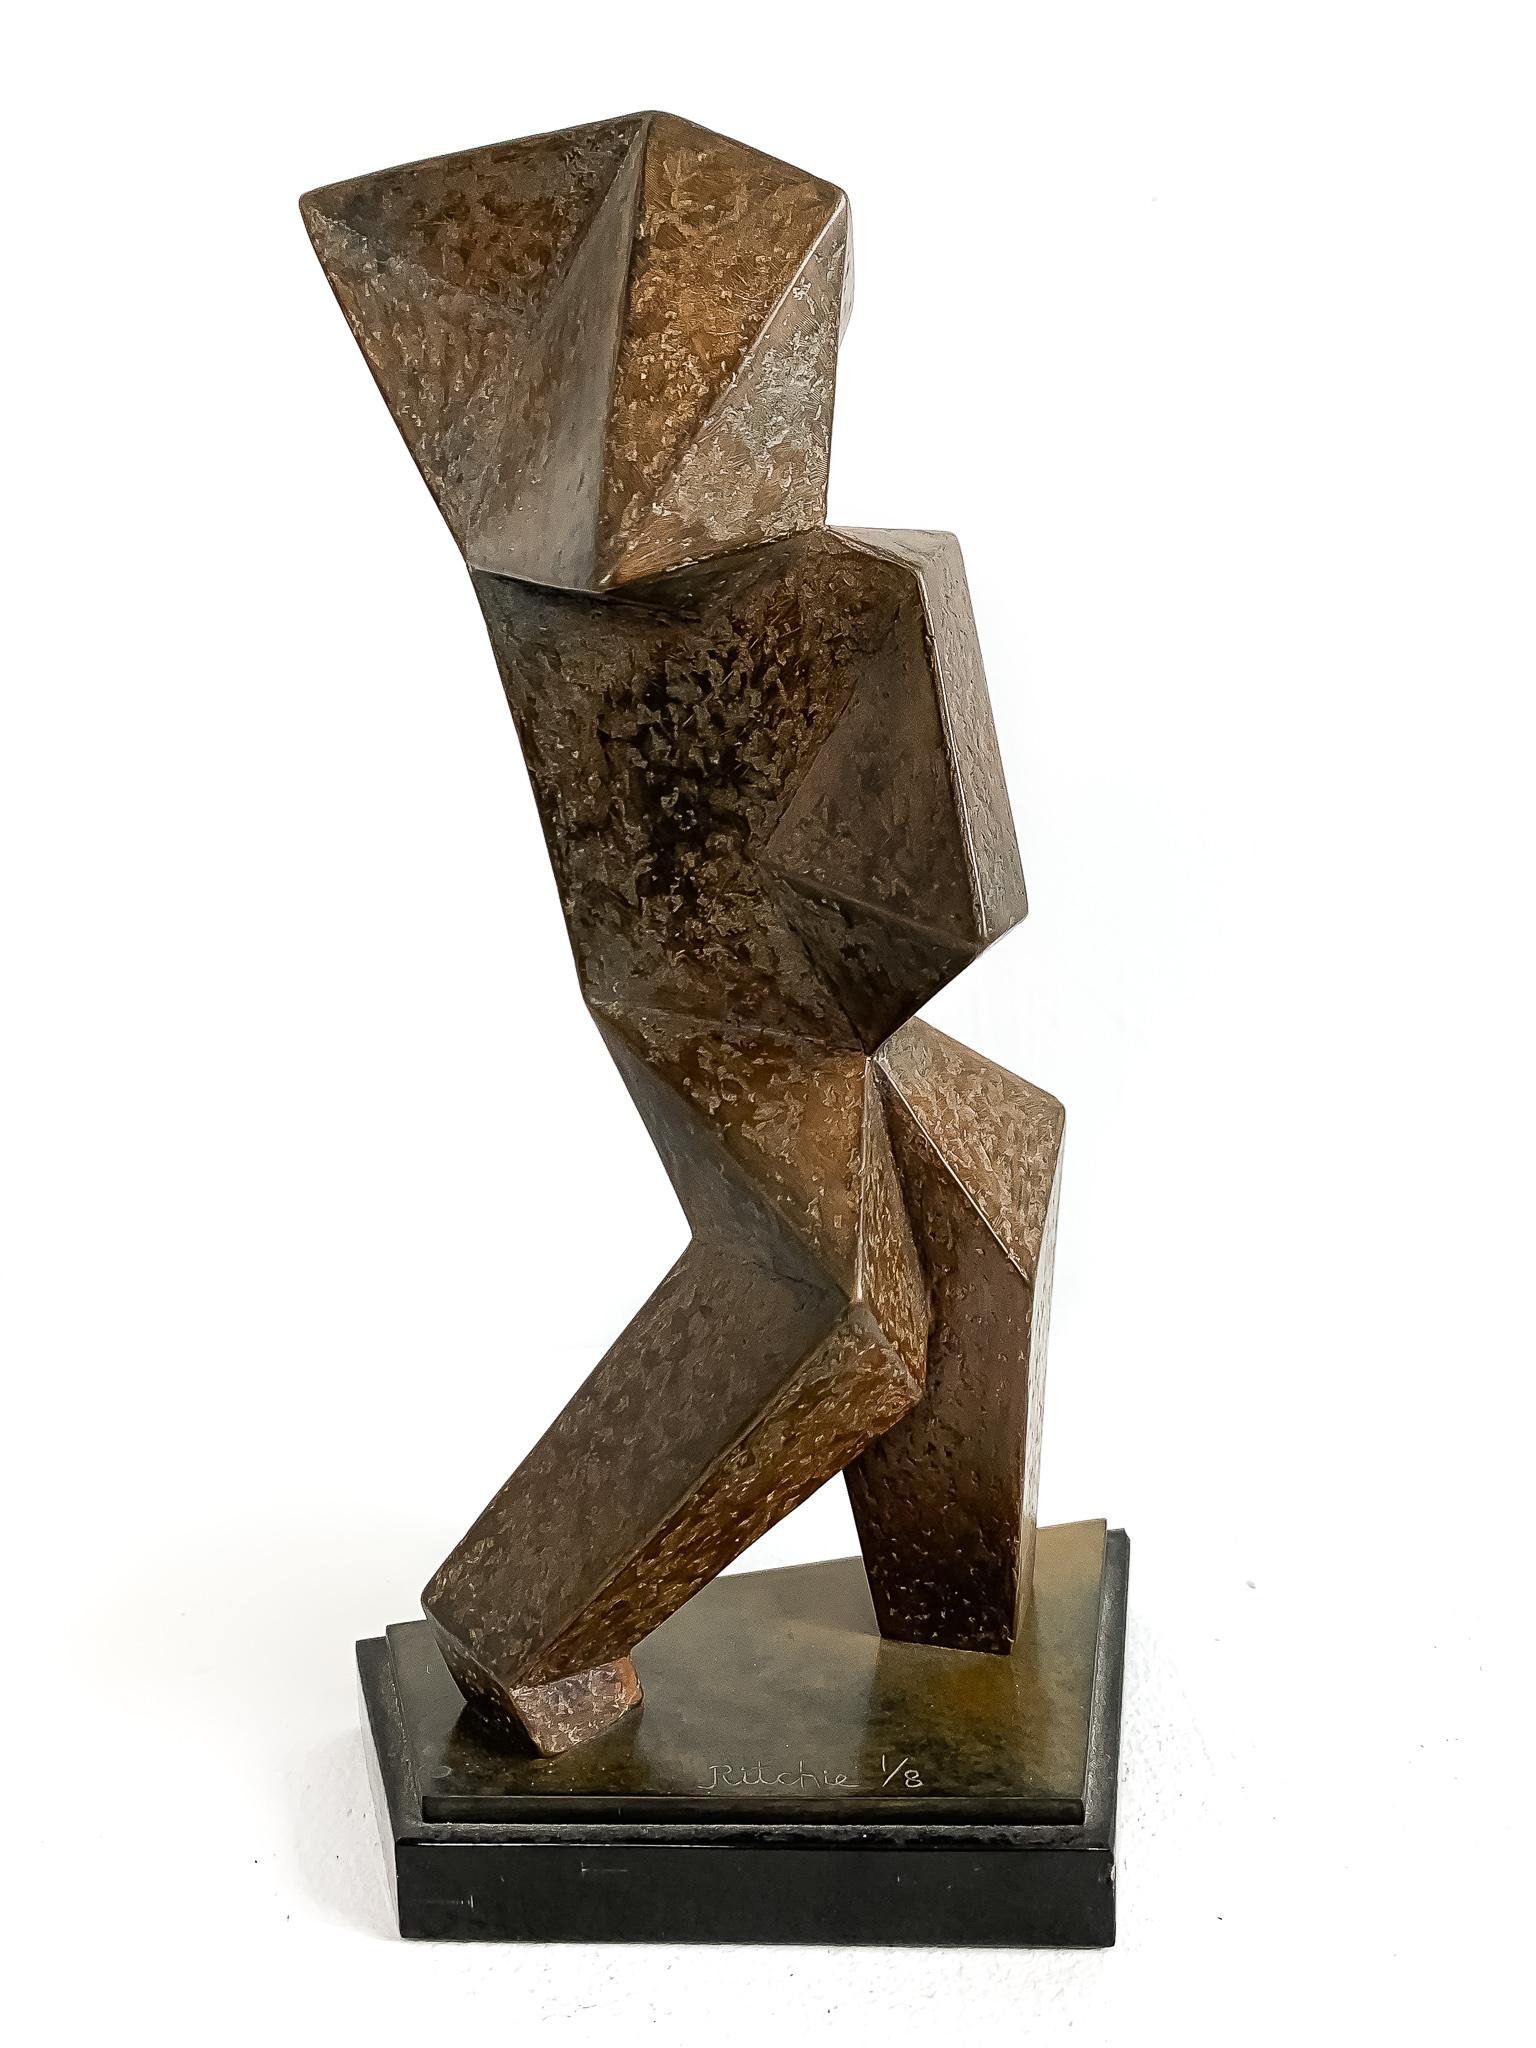 Akt in Bewegung (Zeitgenössisch), Sculpture, von Jim Ritchie